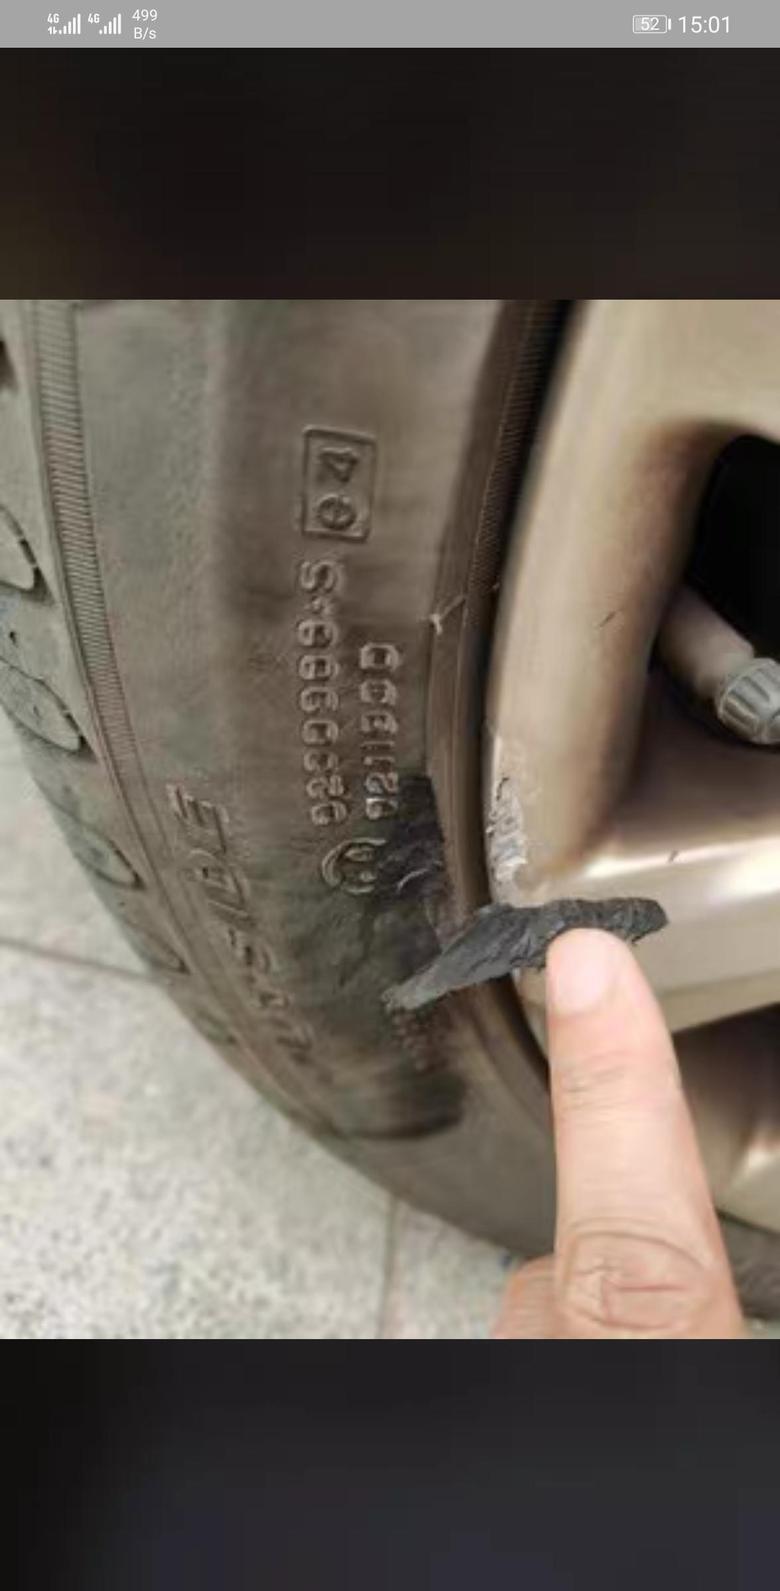 汉ev 各位车友，我的车前几天轮胎不小心蹭了马路牙子，轮毂刮花了轮胎也蹭了一块，没掉，类似于下图（图一网上找的），目前暂时用轮胎胶水粘住了(如图二和三)，请问这种情况需要换胎吗？